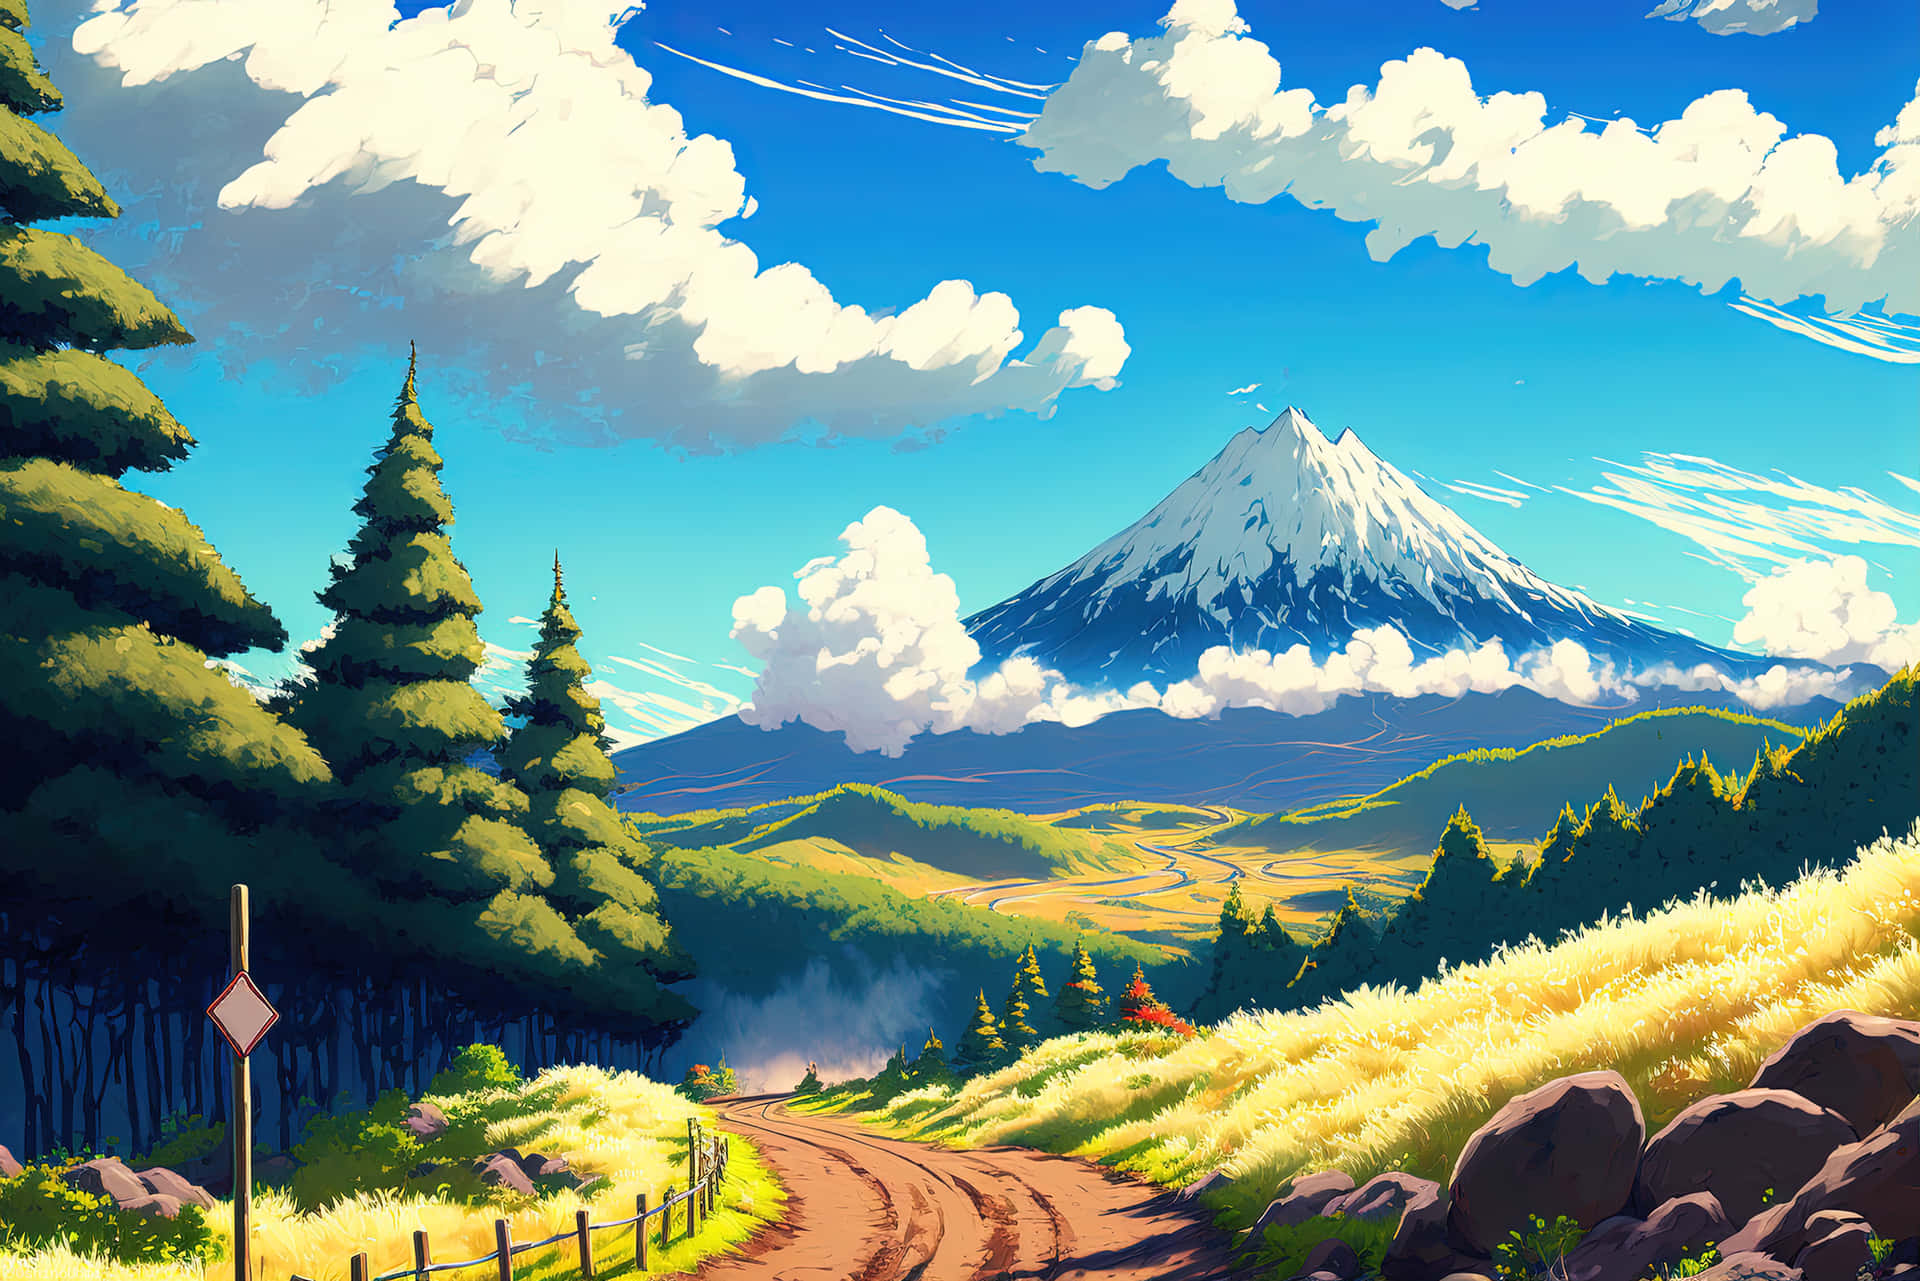 Saftigeenge Og Pixelerede Bjerge Strækker Sig Ud I Horisonten I Dette Fredelige Landskab. Wallpaper